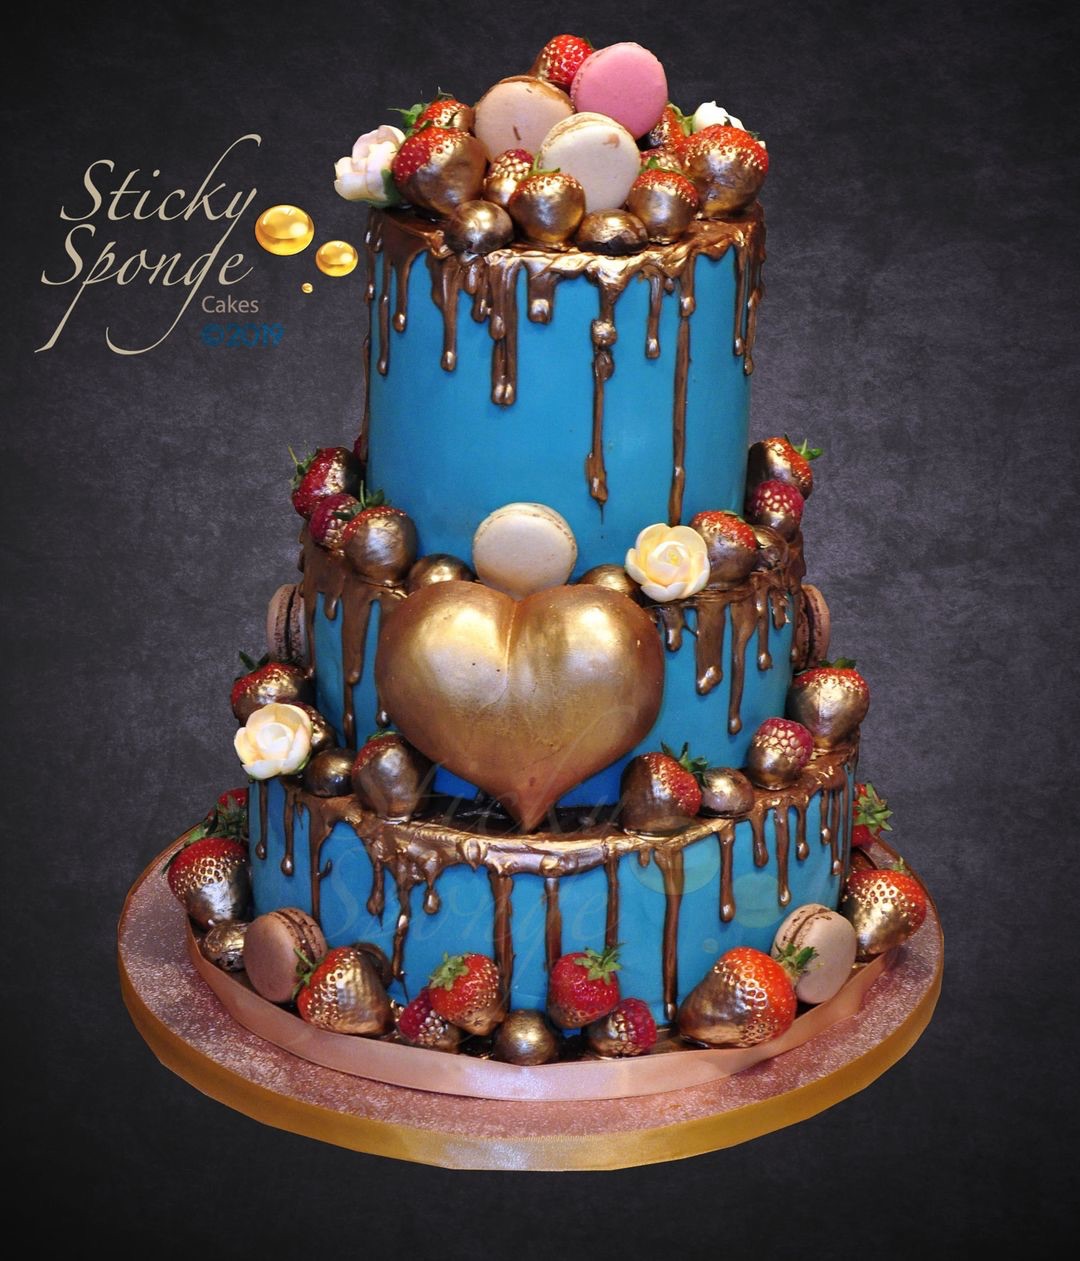 Sticky Sponge Cake Studio-Image-33